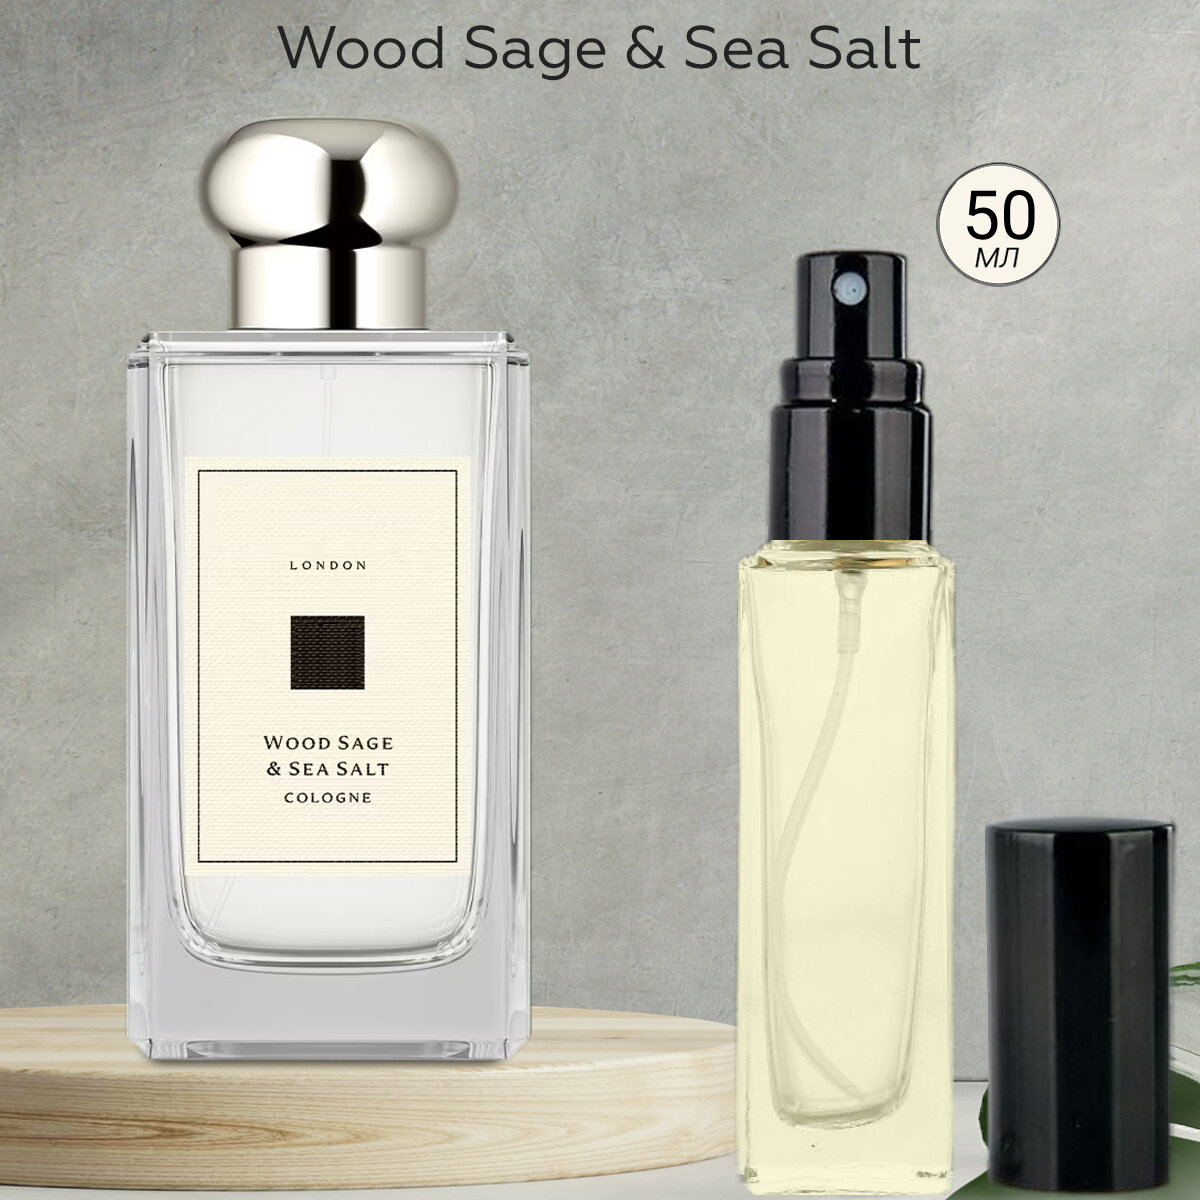 Gratus Parfum Wood Sage Sea Salt духи унисекс масляные 50 мл (спрей) + подарок